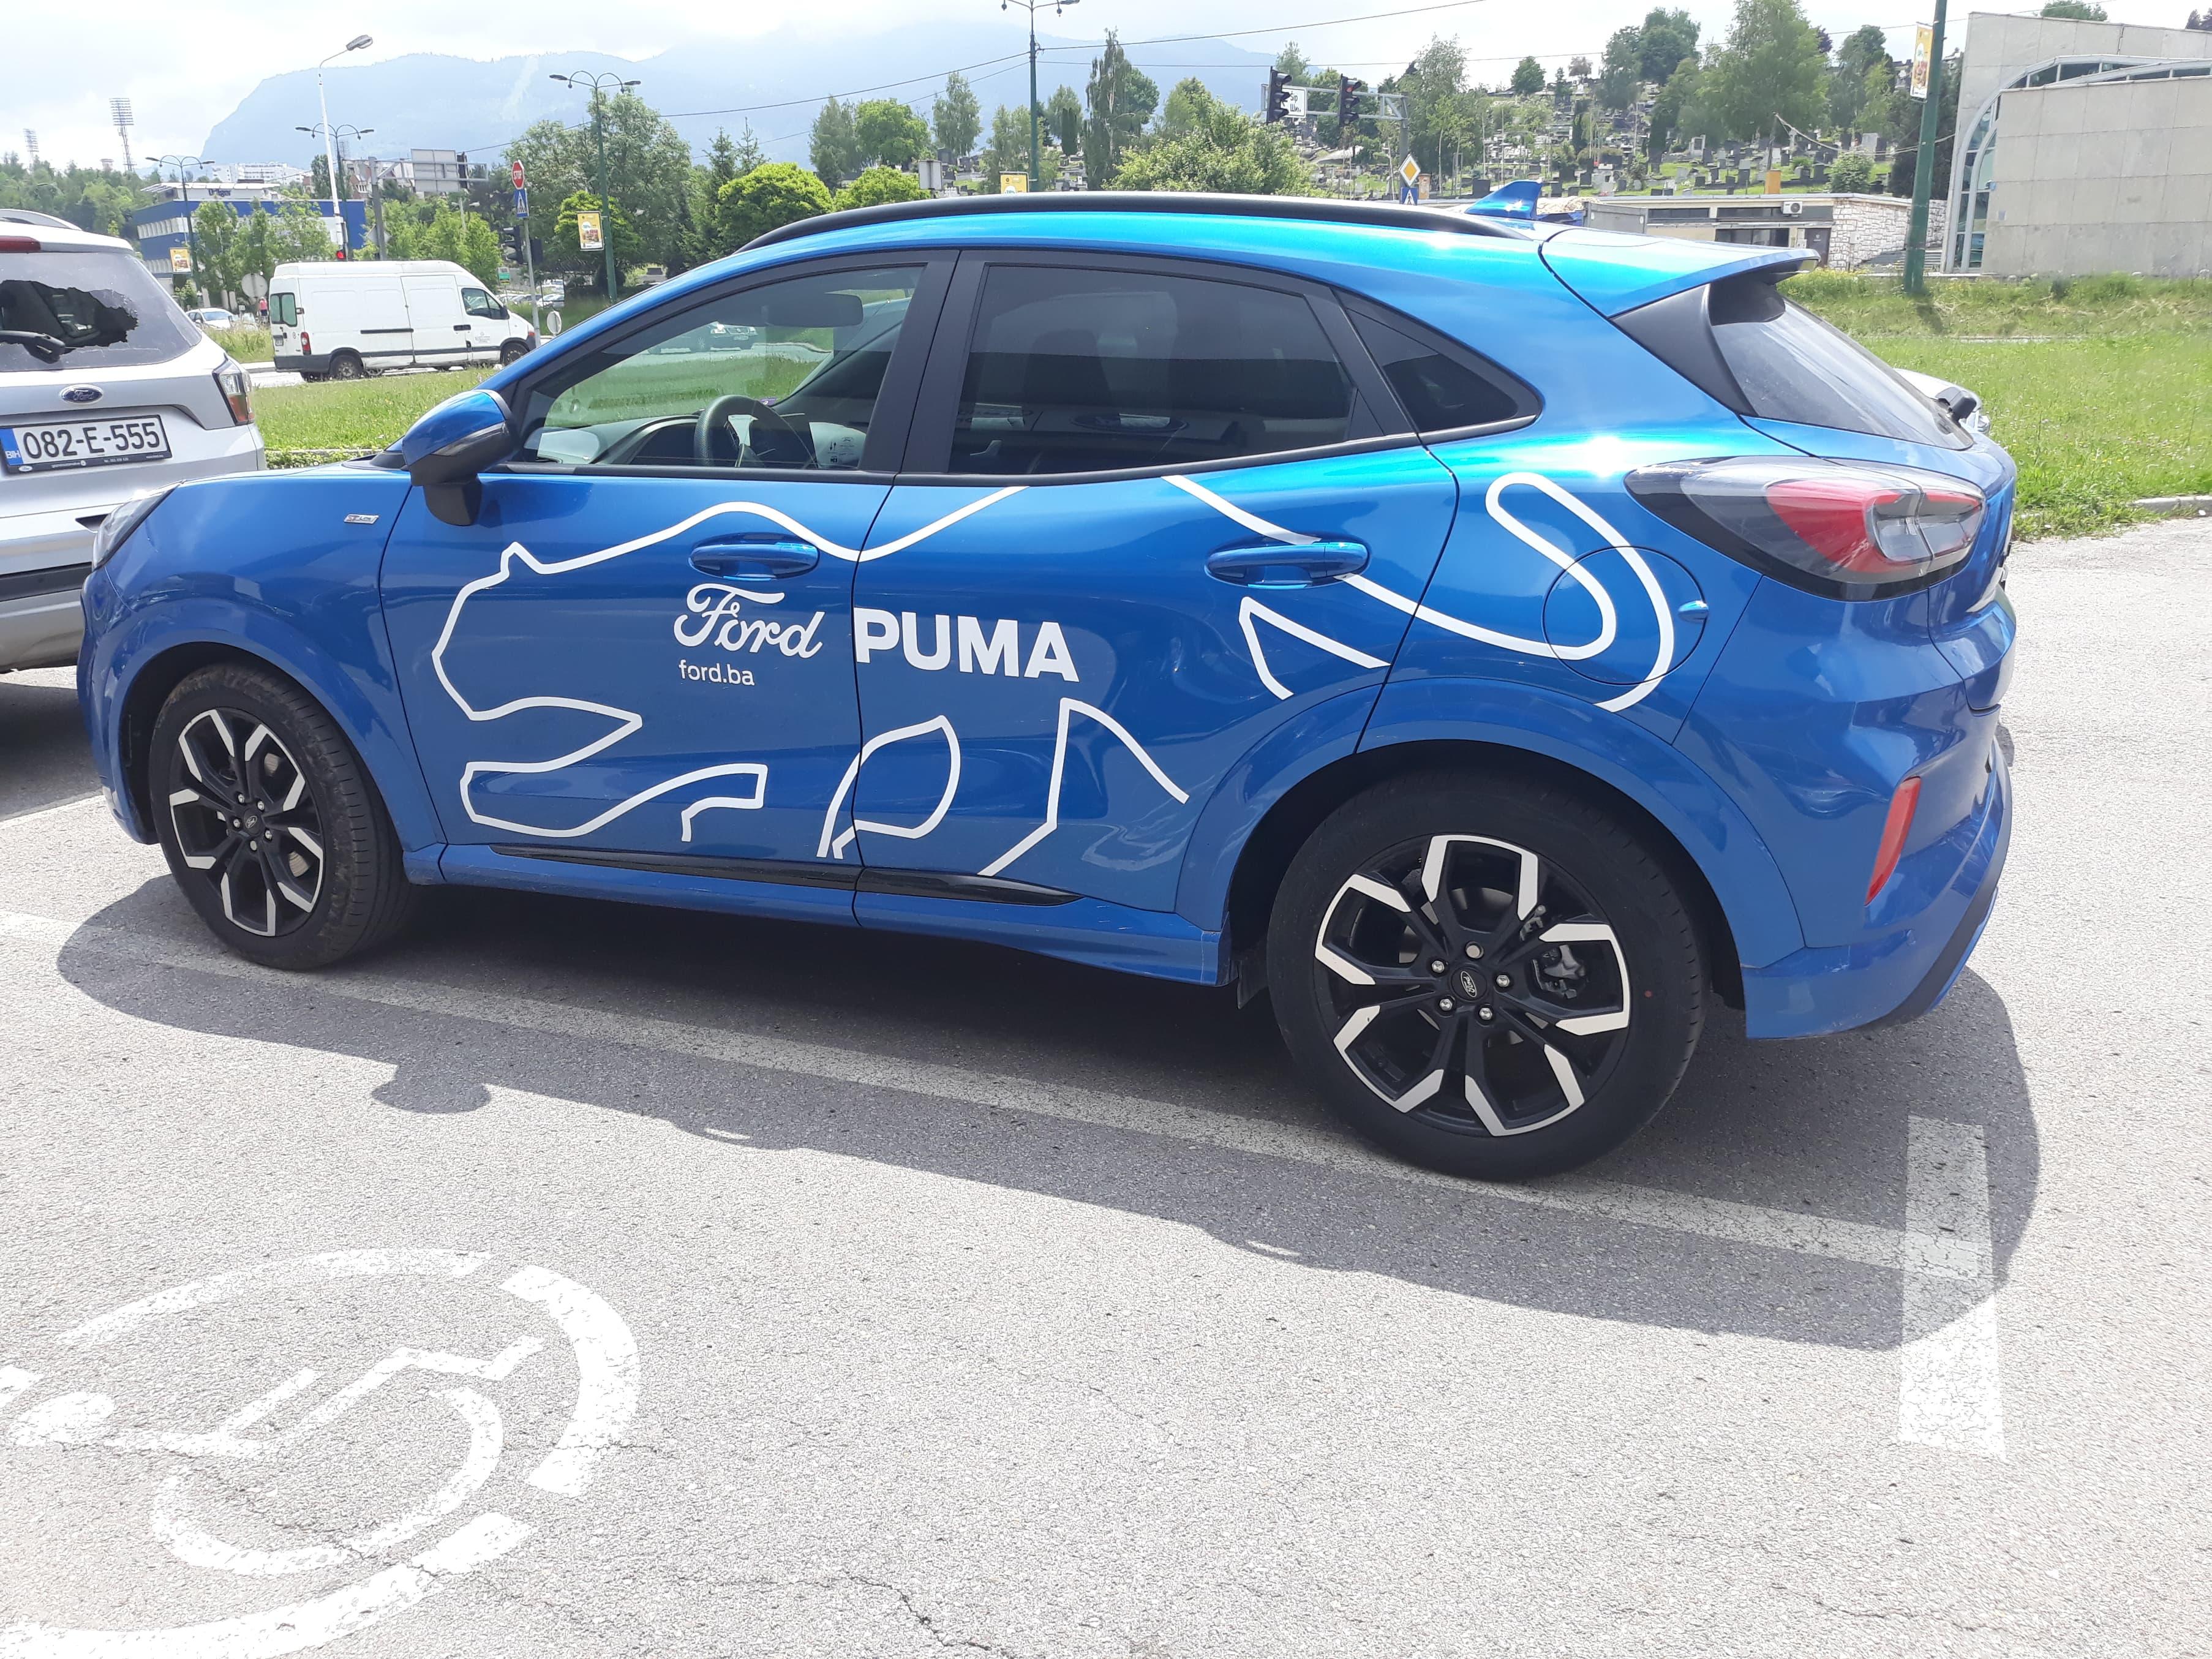 Ford Puma - Avaz